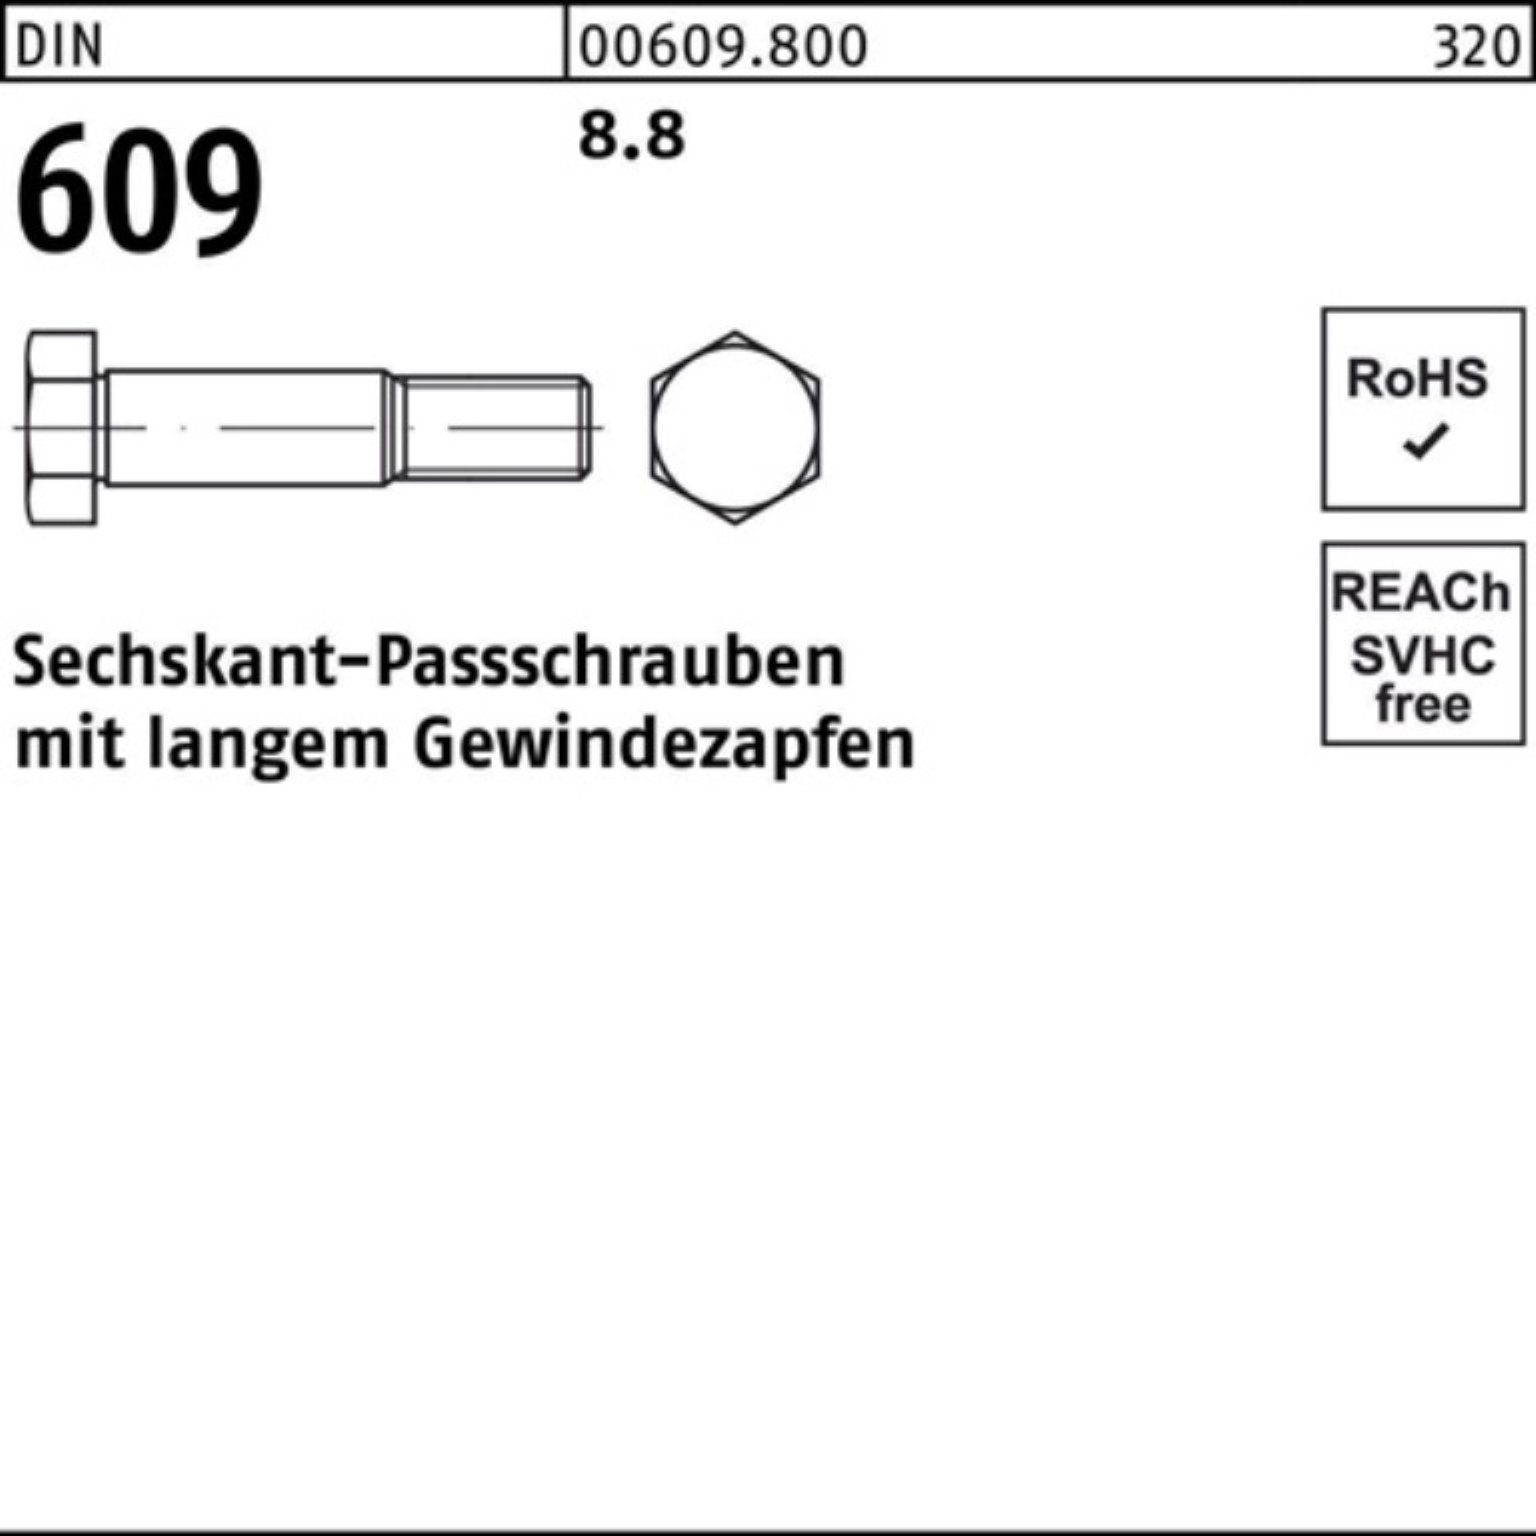 Reyher Schraube Pack DIN Sechskantpassschraube M36x Gewindezapfen langem 100er 140 609